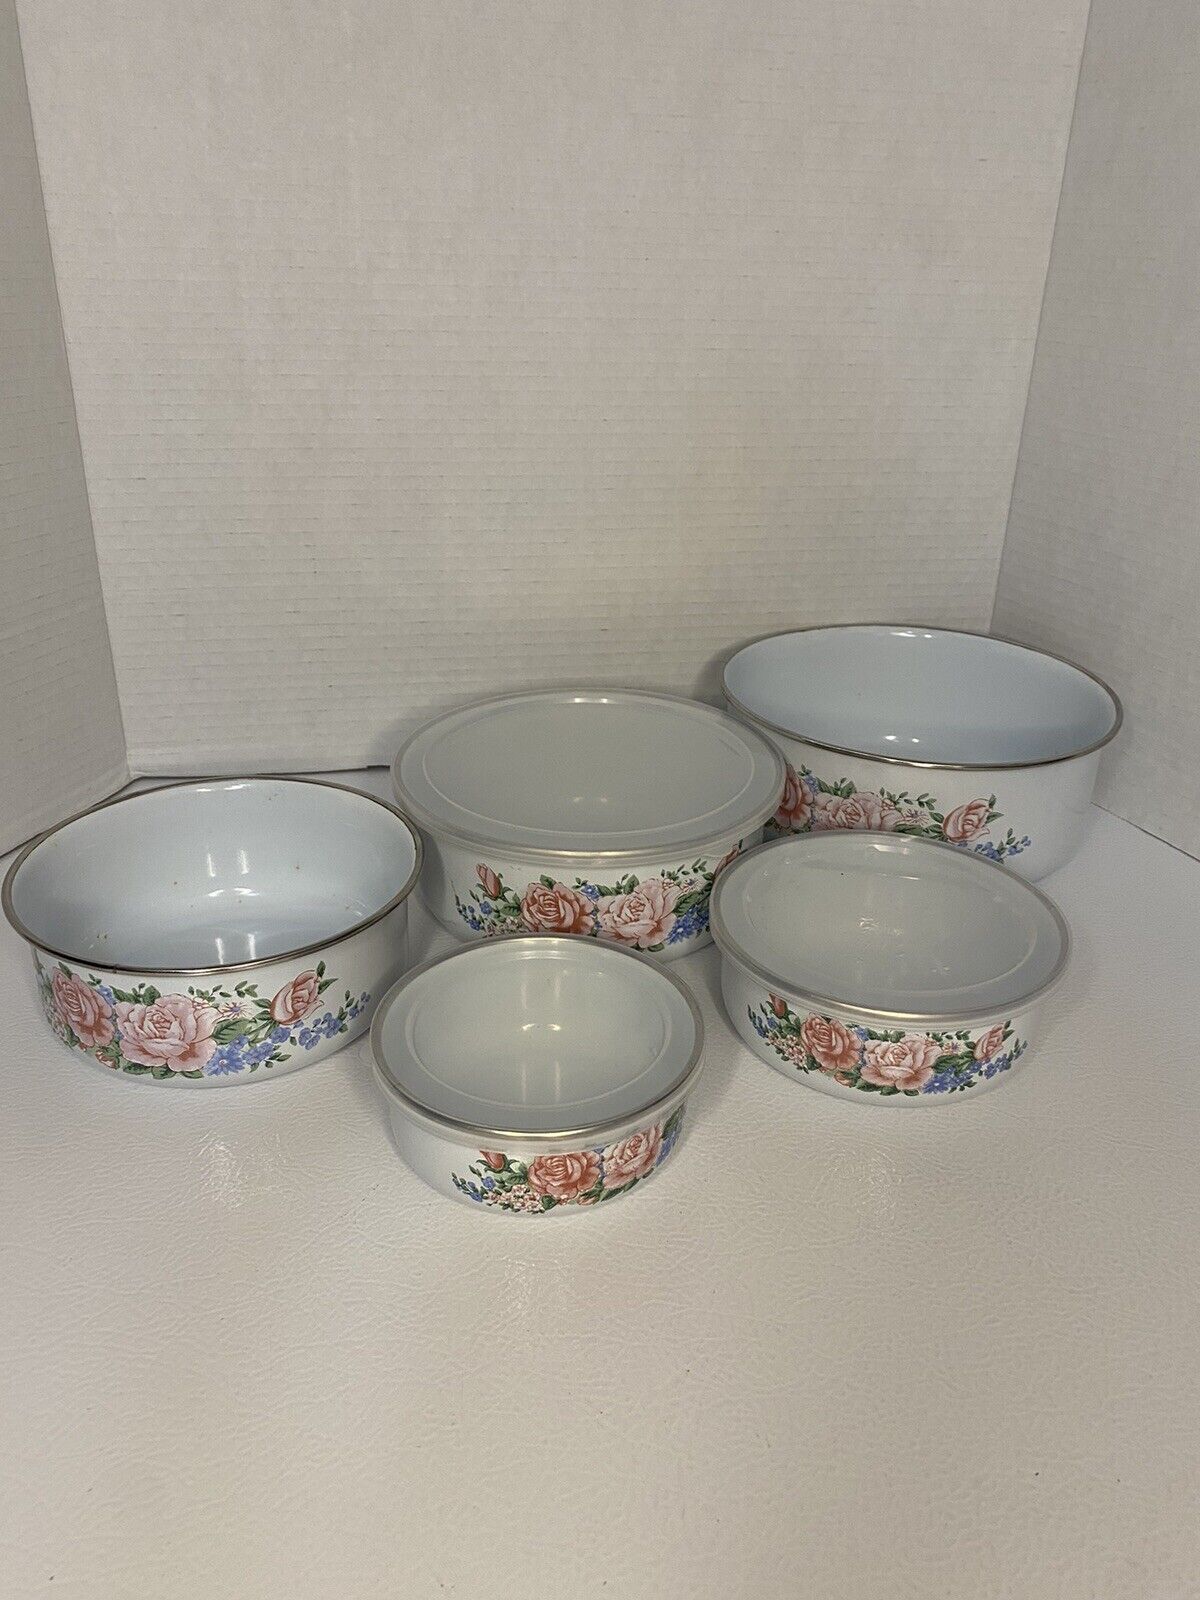 Vintage Porcelain Enamel Nesting Bowls Pink Rose Floral Kitchen Set of 5 w/ Lids